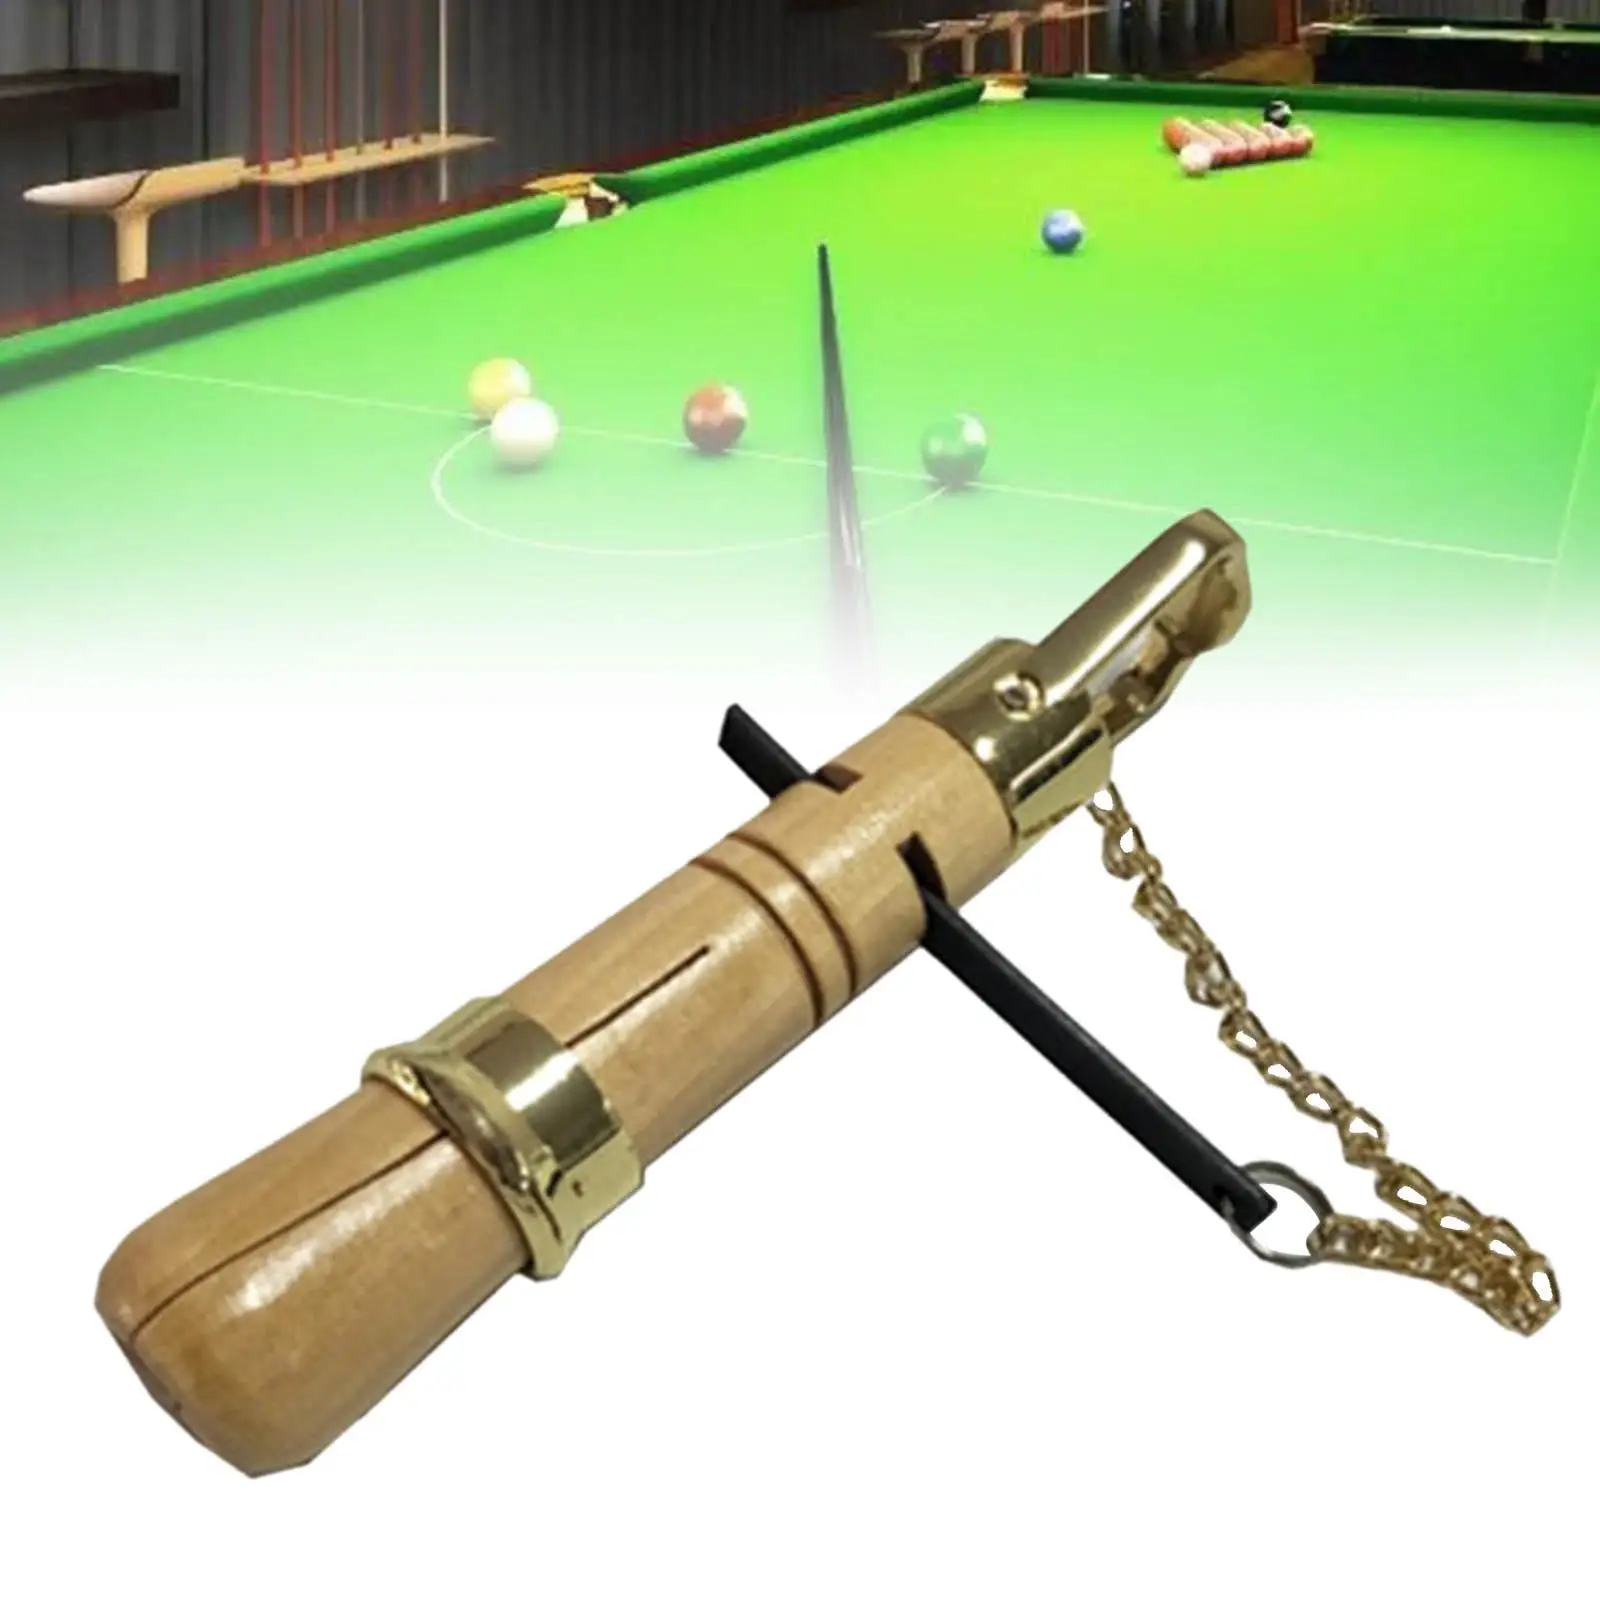 Snooker Cue Tip Repair Kit Multifunction Snooker Shaper Wood Cue Tips Clamp